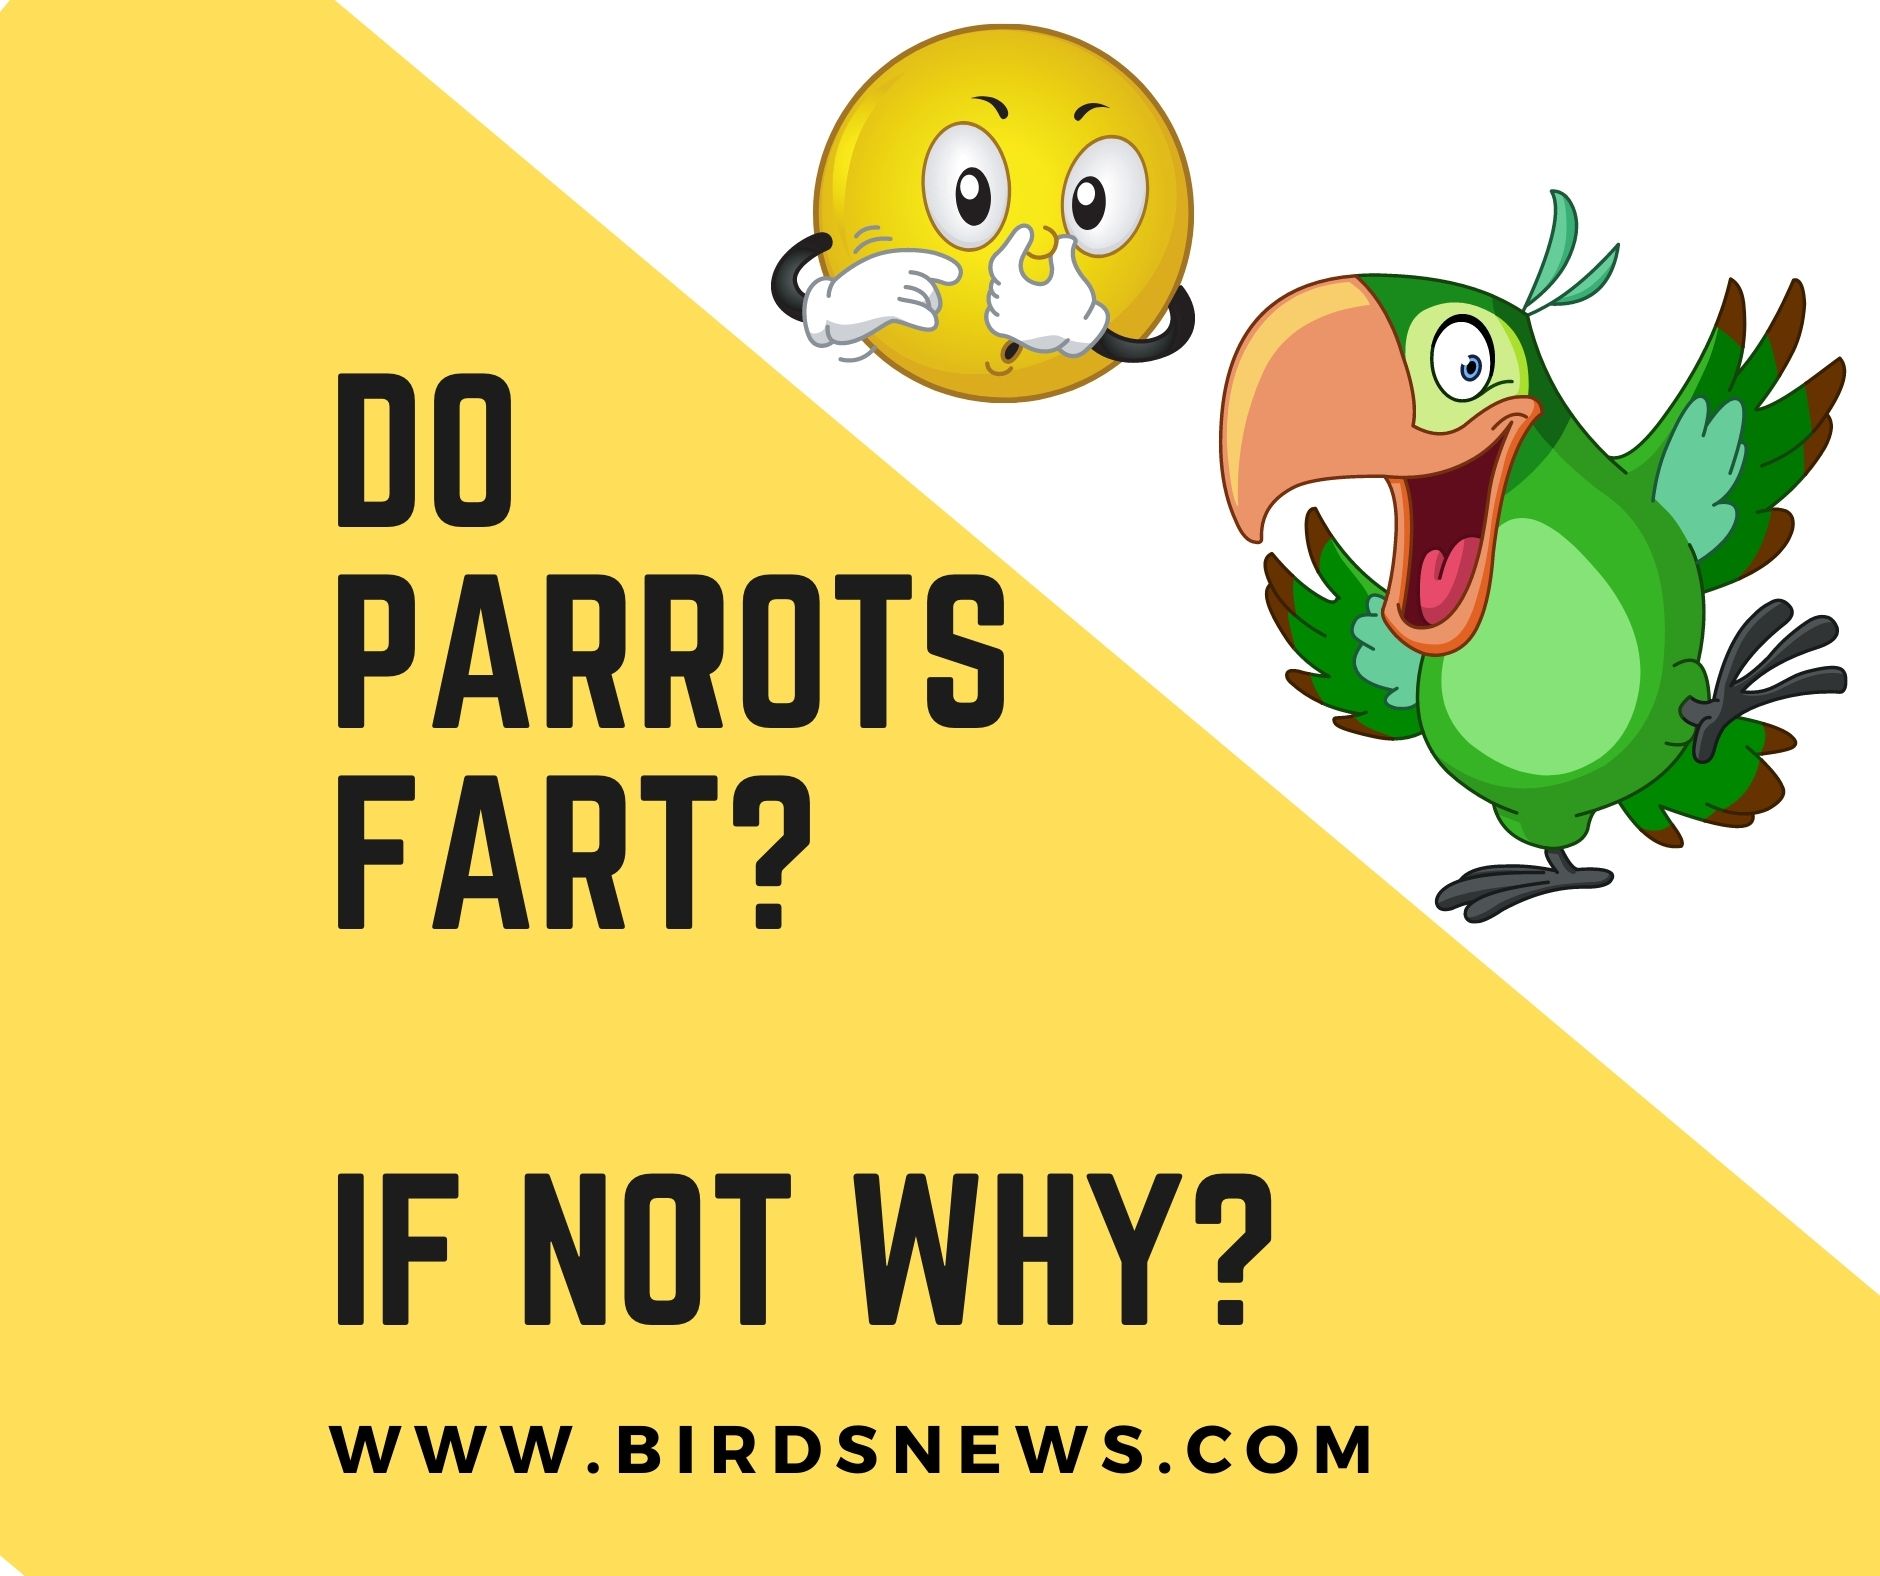 Why did my bird fart?